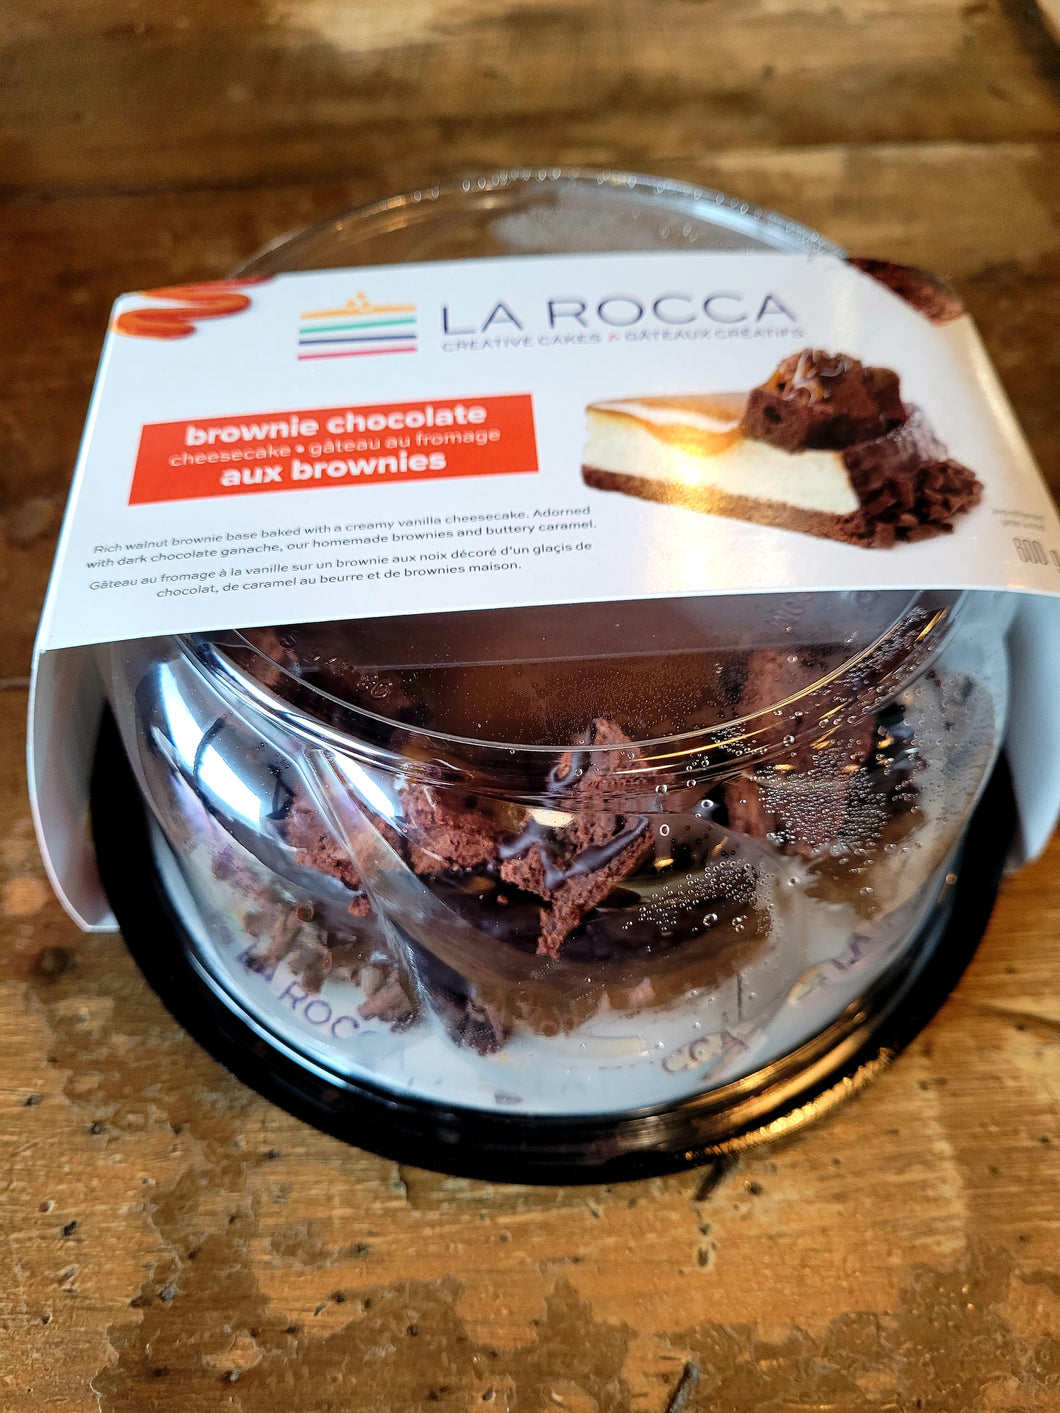 La Rocca Brownie Chocolate Cheesecake